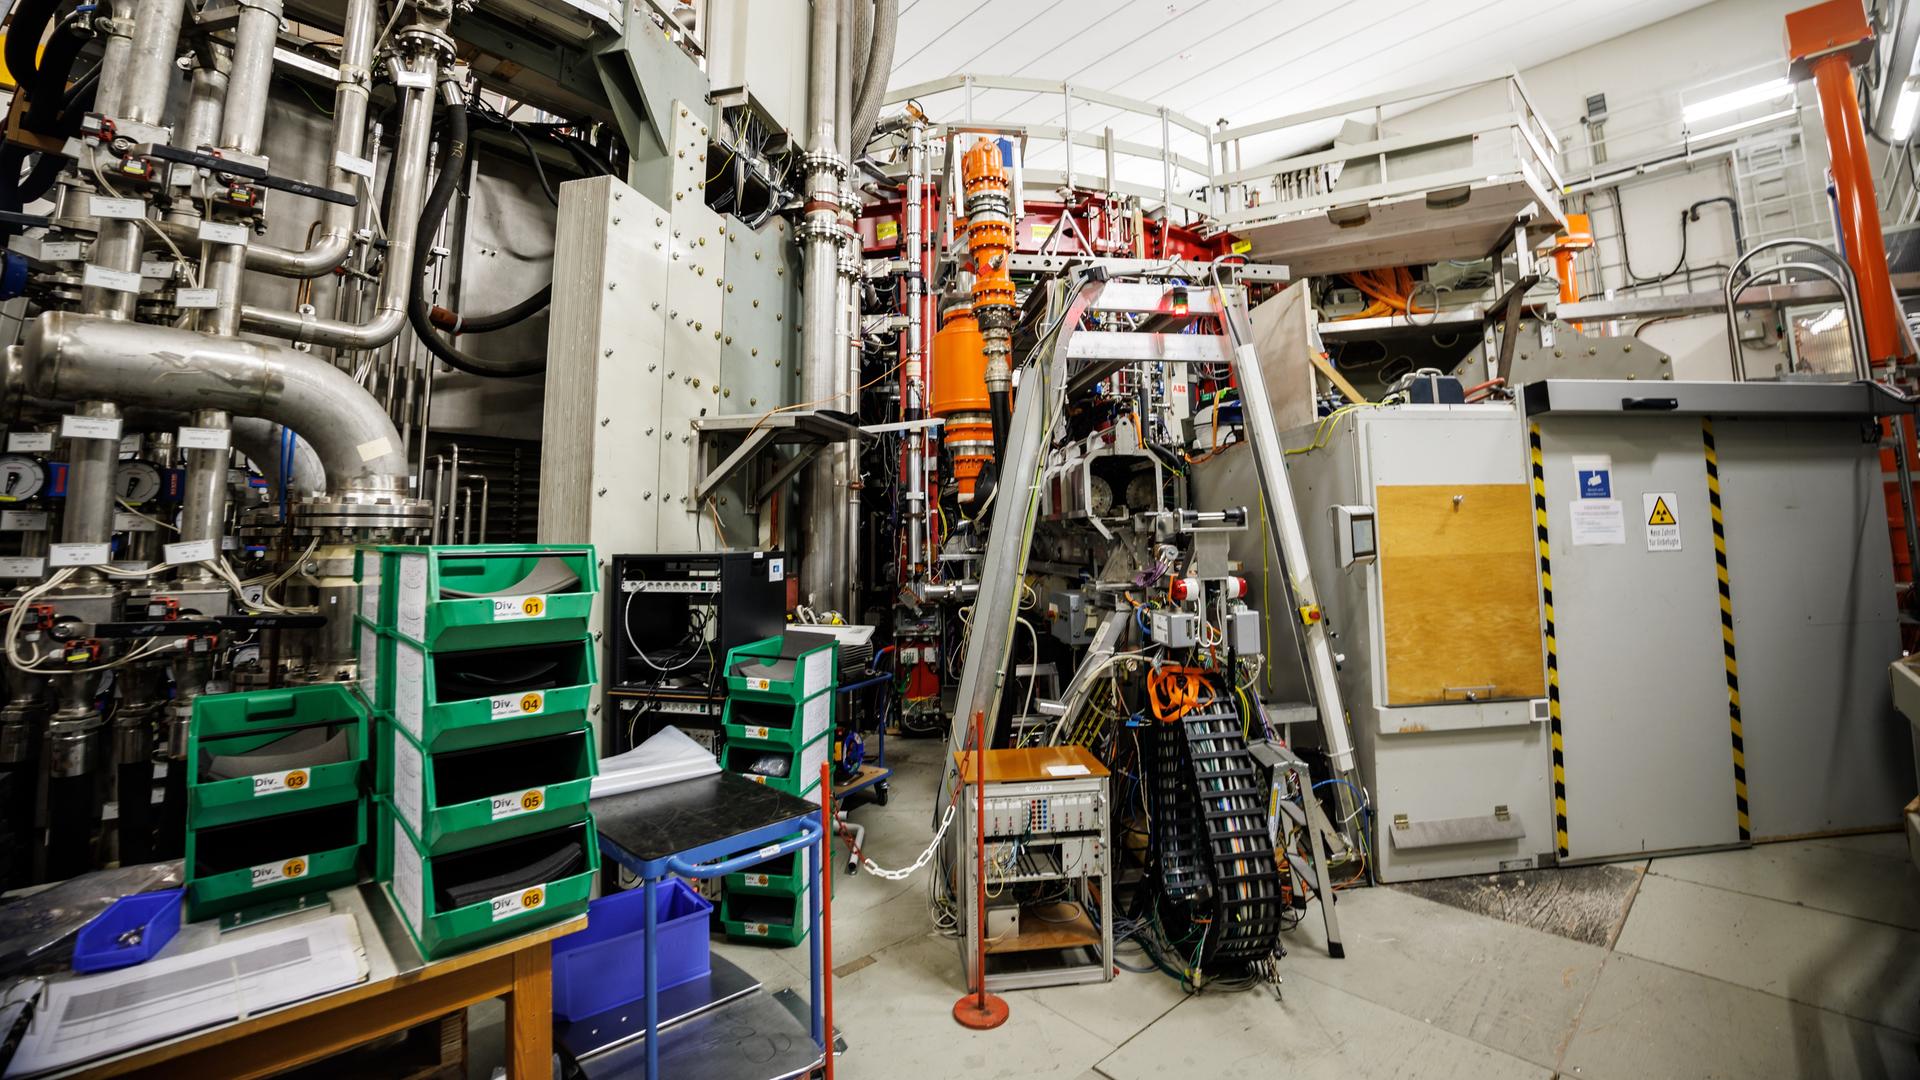 Forschungsanlage ASDEX Upgrade. Eine Versuchsanlage zur Entwicklung von Fusionsreaktoren. 